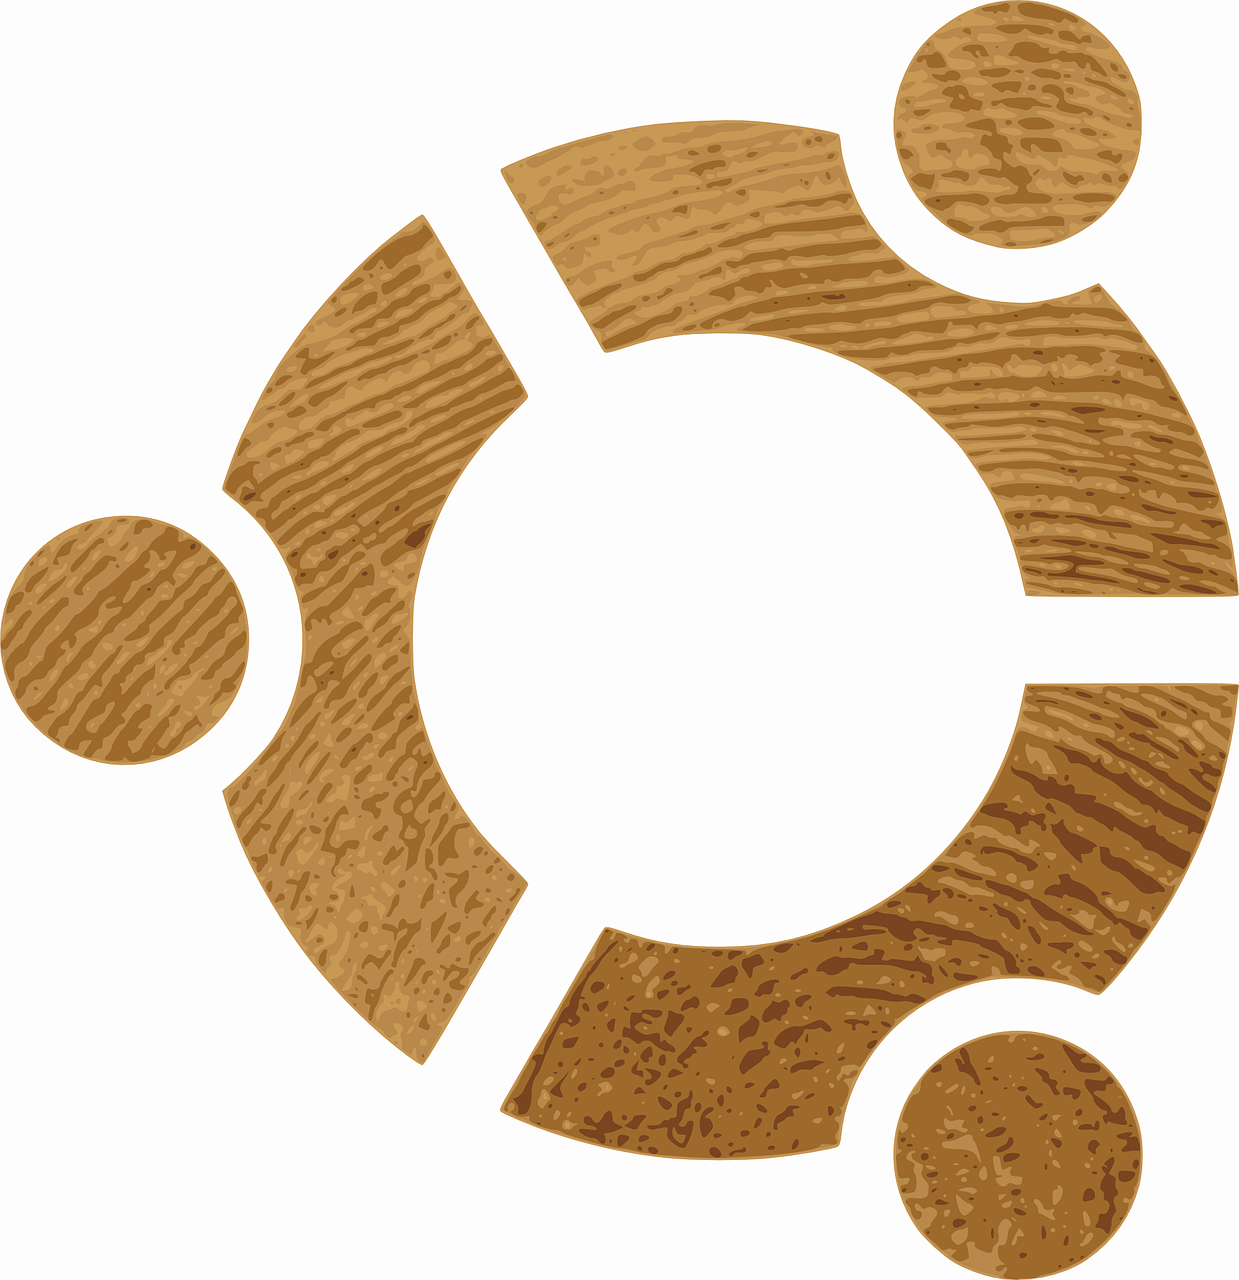 ubuntu logo wood free photo